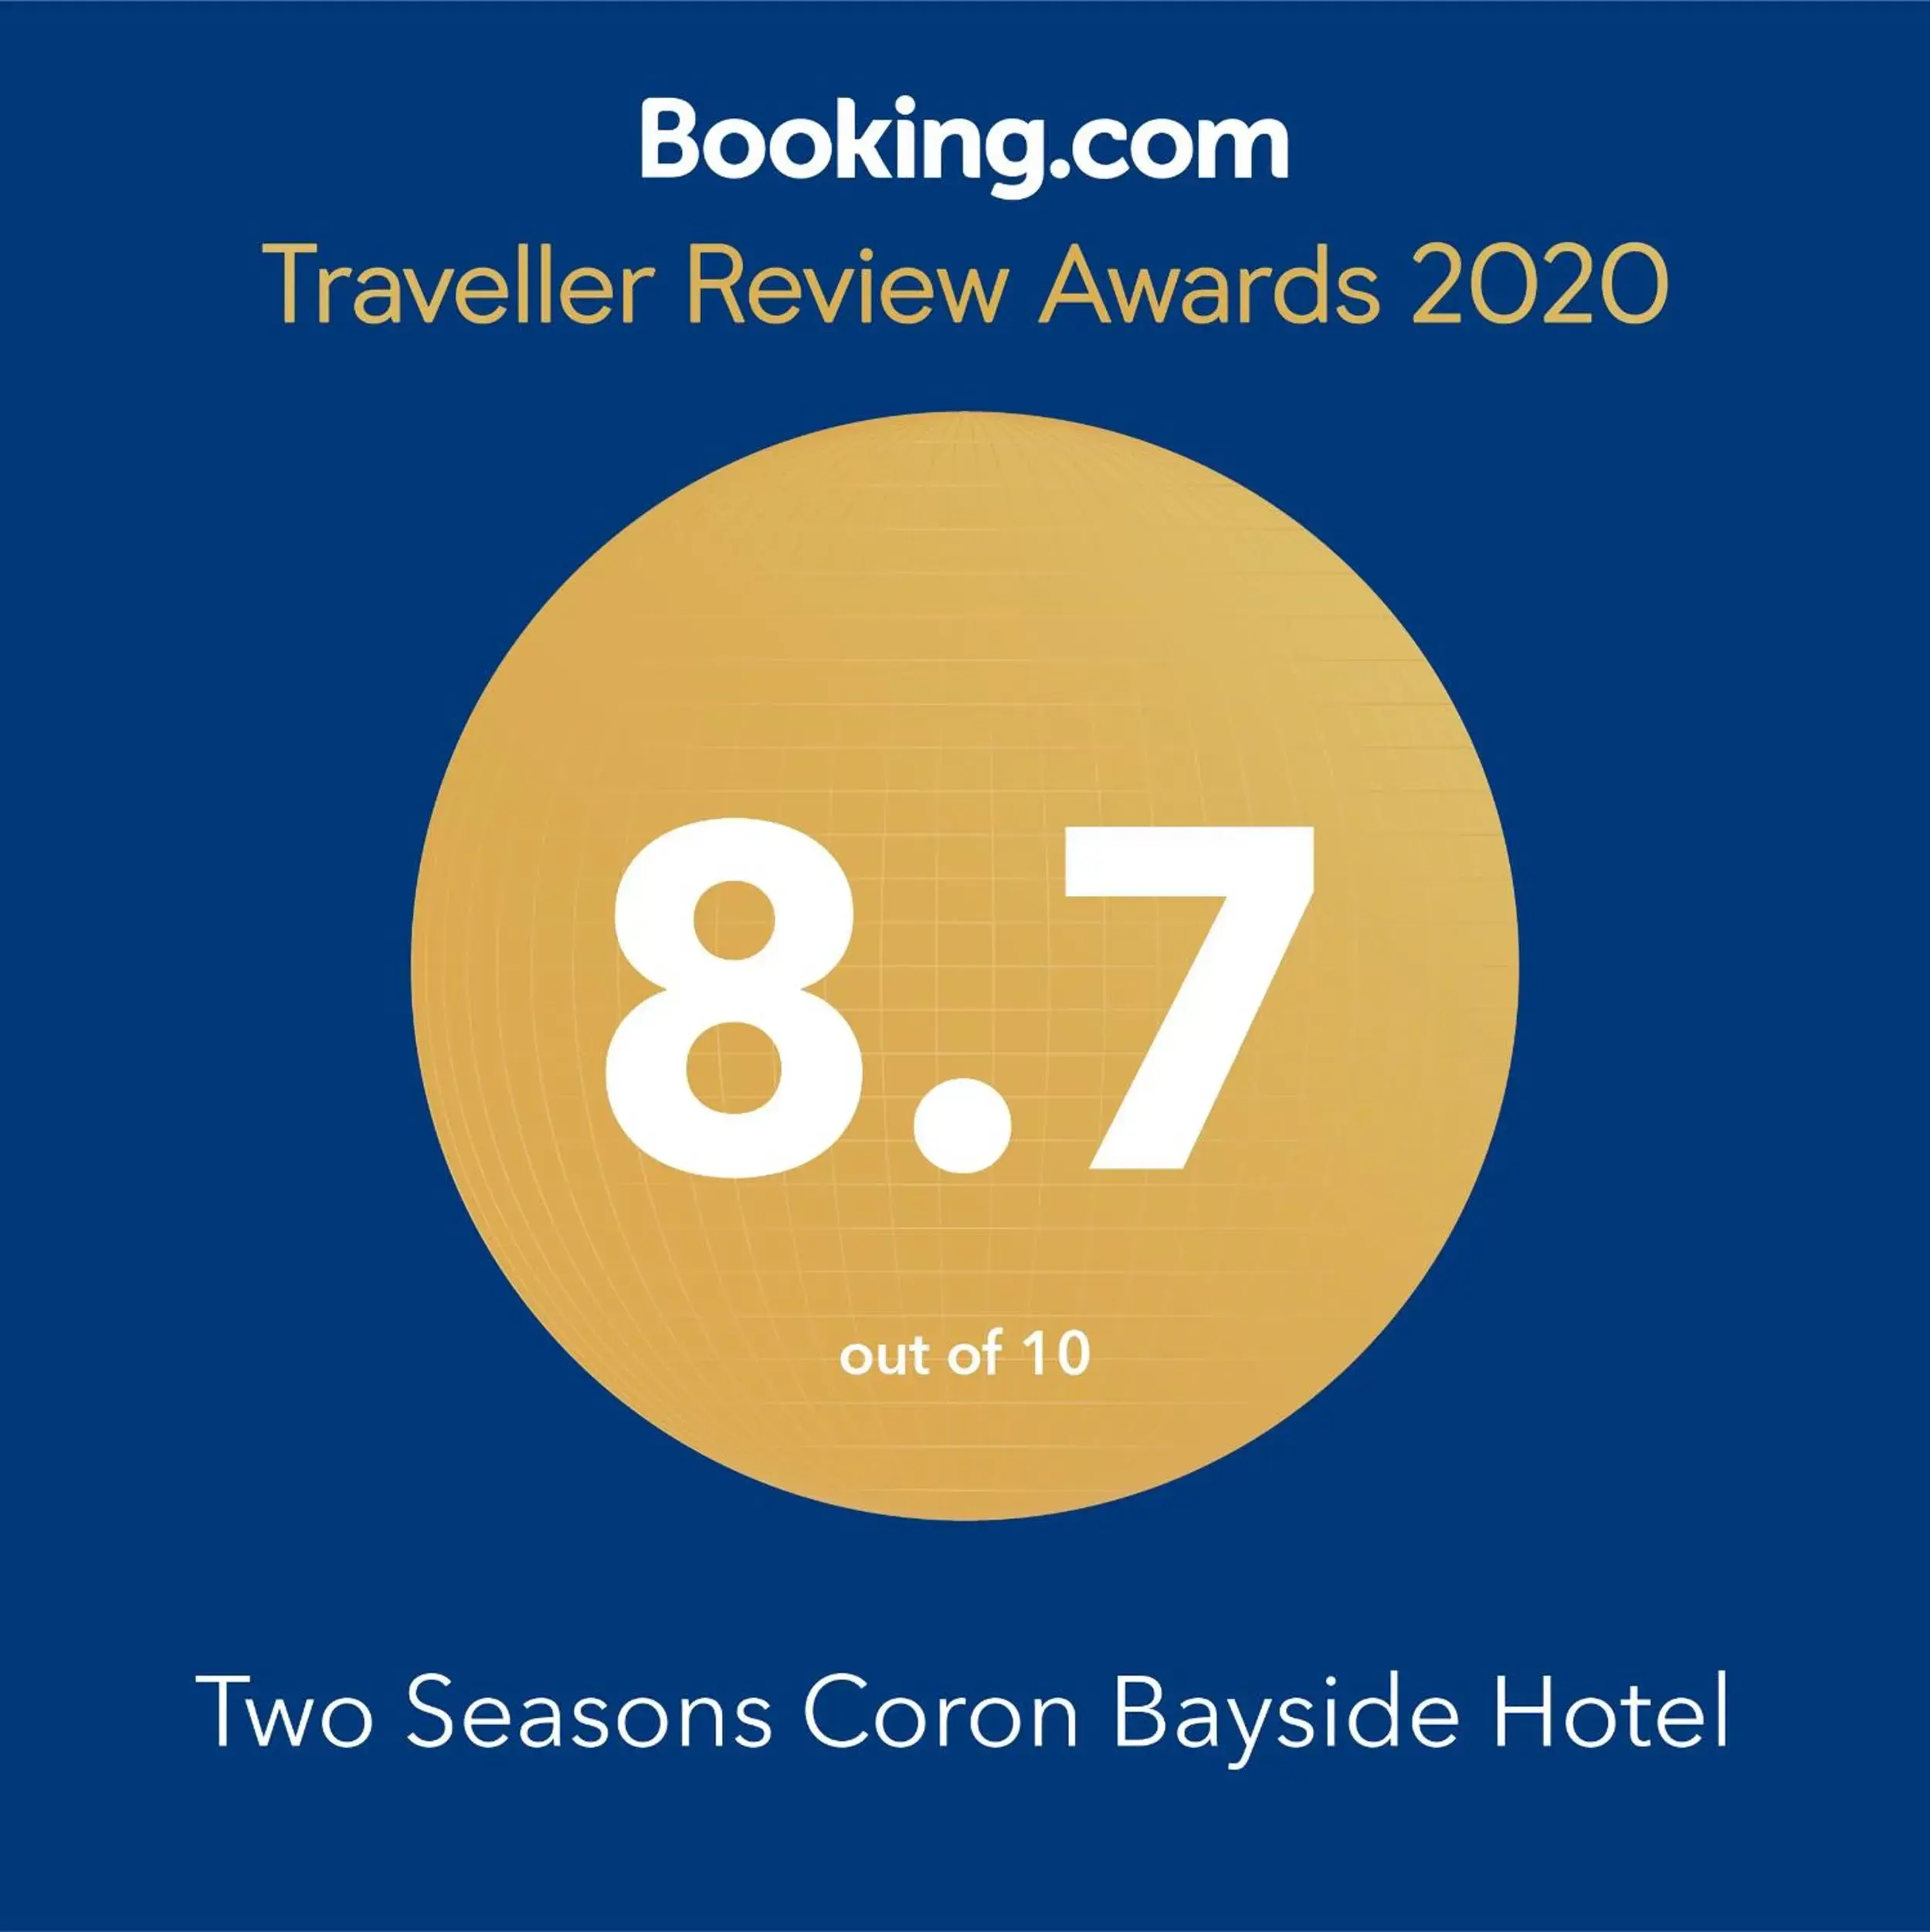 Two Seasons Coron Bayside Hotel